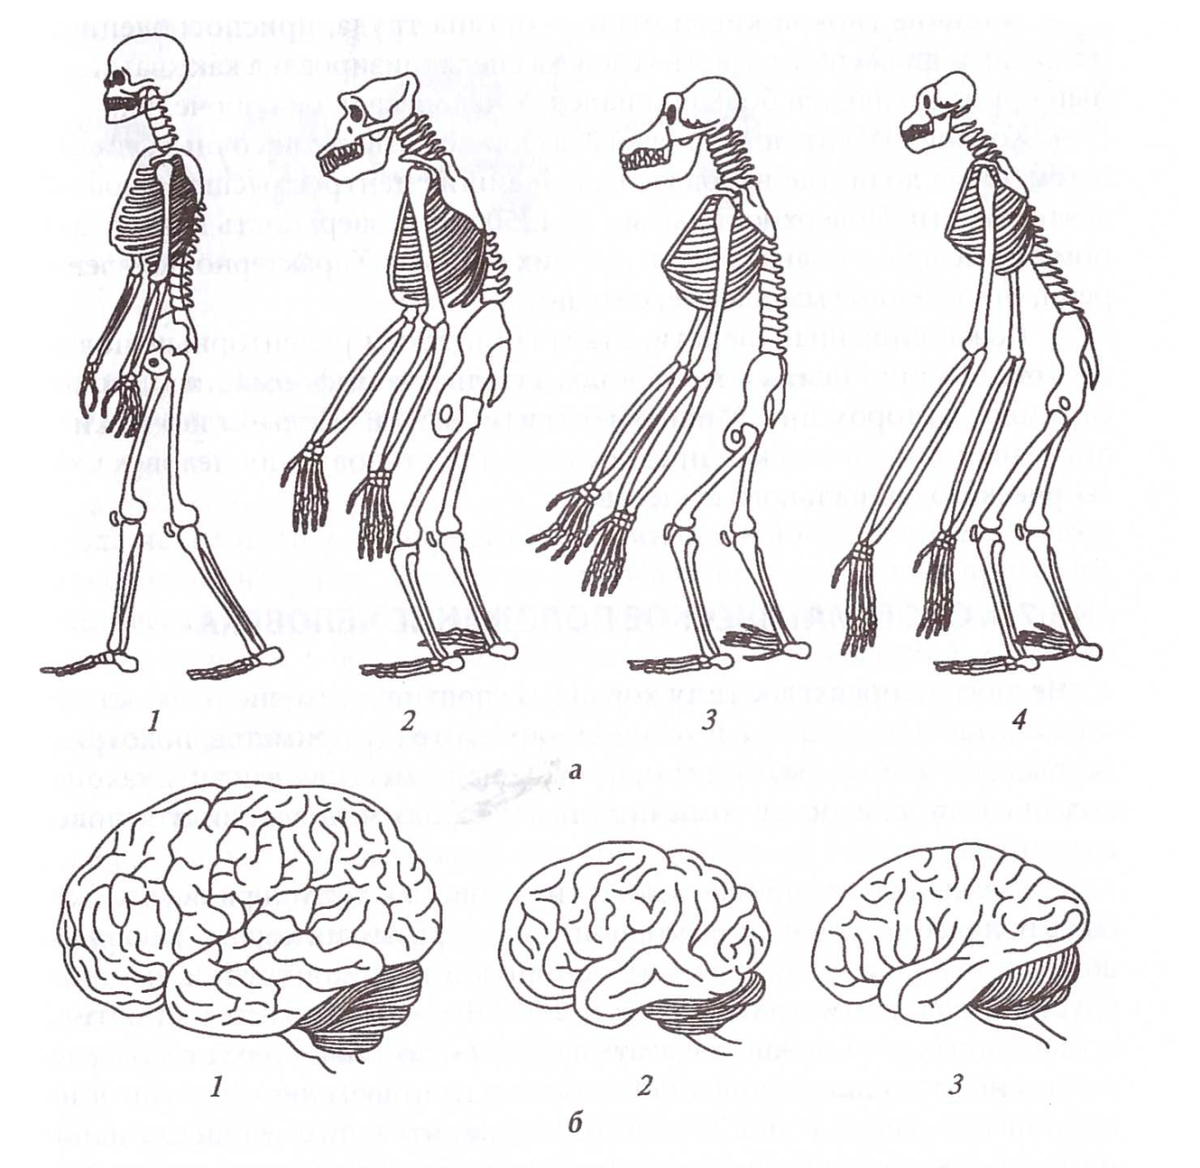 Сравнение скелета человека и человекообразной обезьяны. Строение мозга человекообразной обезьяны. Строение скелета человека и человекообразных обезьян. Эволюция человекообразных обезьян. Шимпанзе отличается от человека